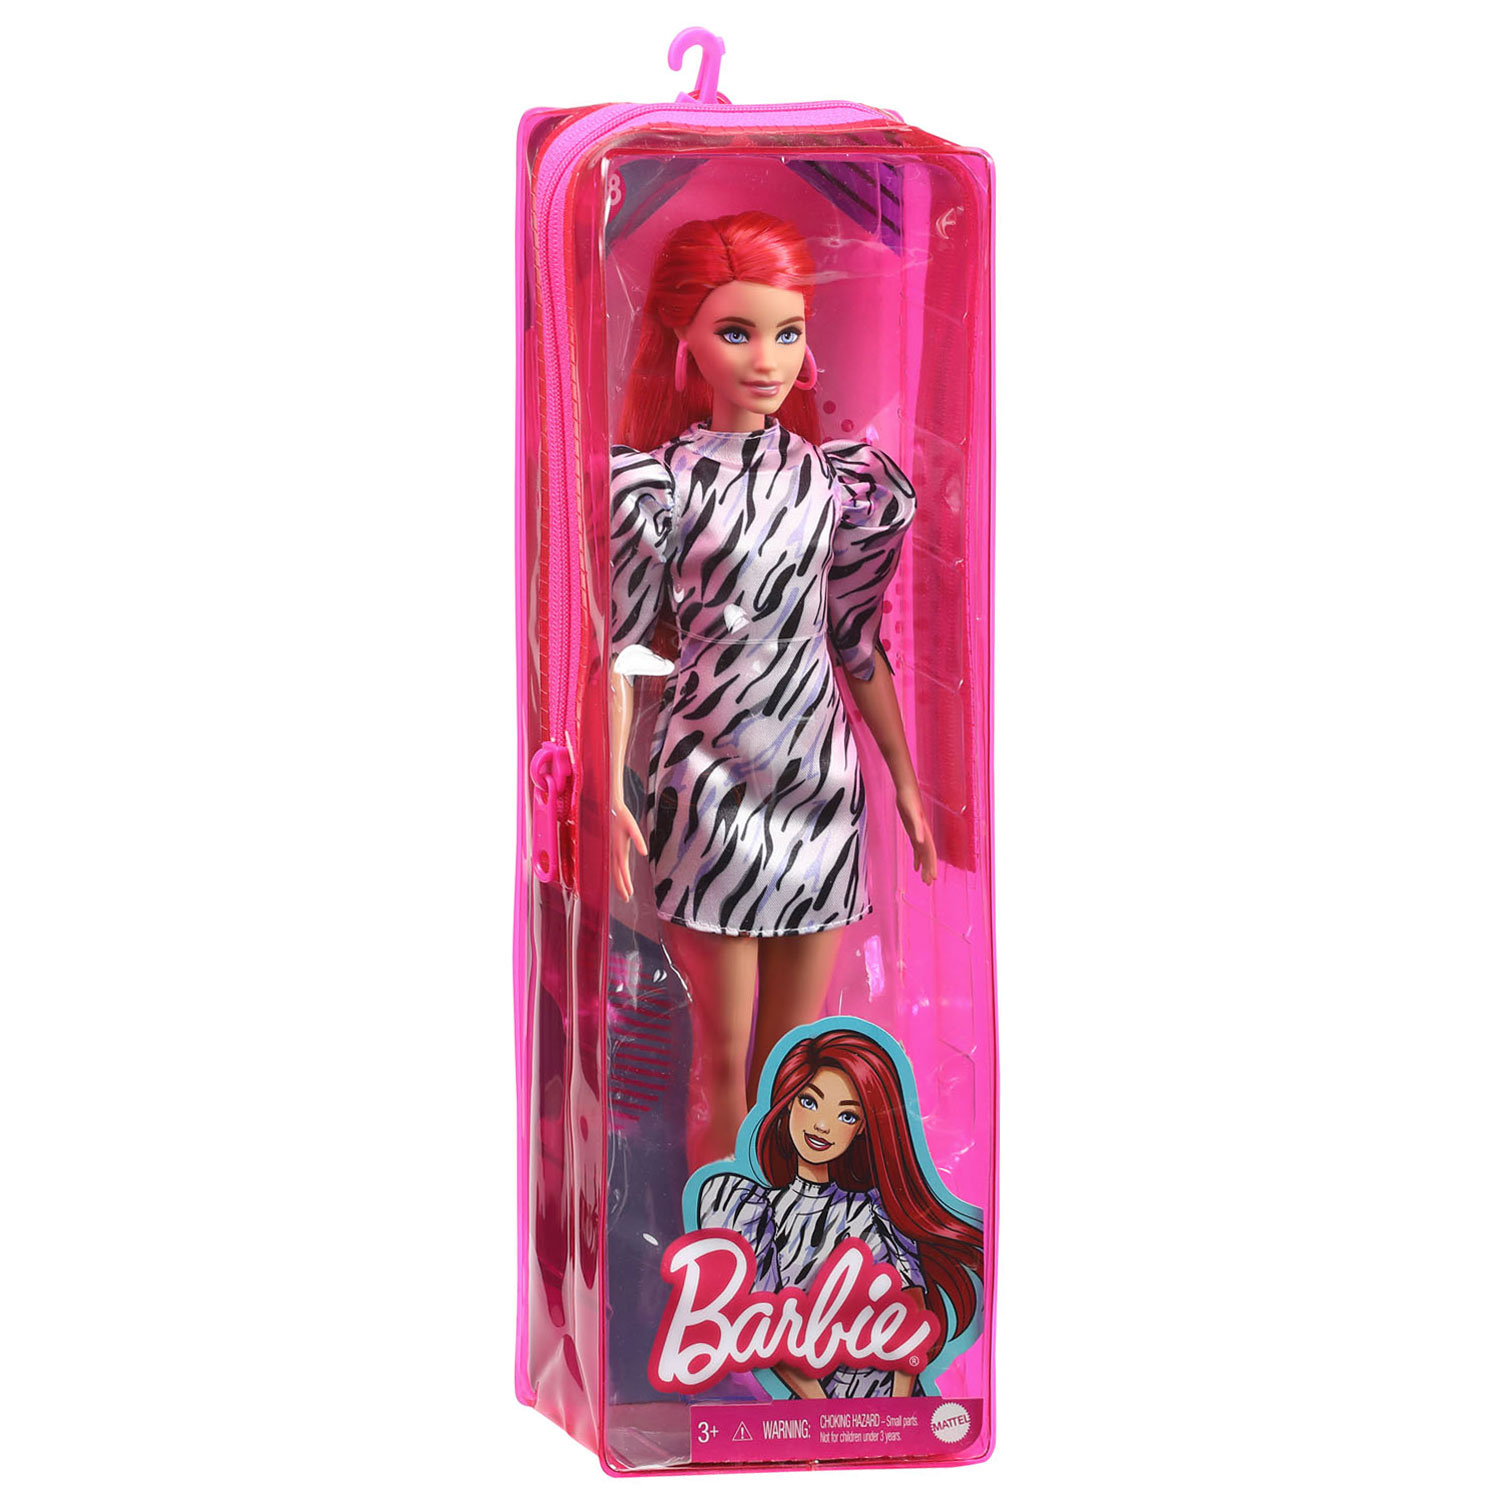 capsule Niet meer geldig Moedig aan Barbie Fashionista Pop - Zwart/wit jurkje | Thimble Toys